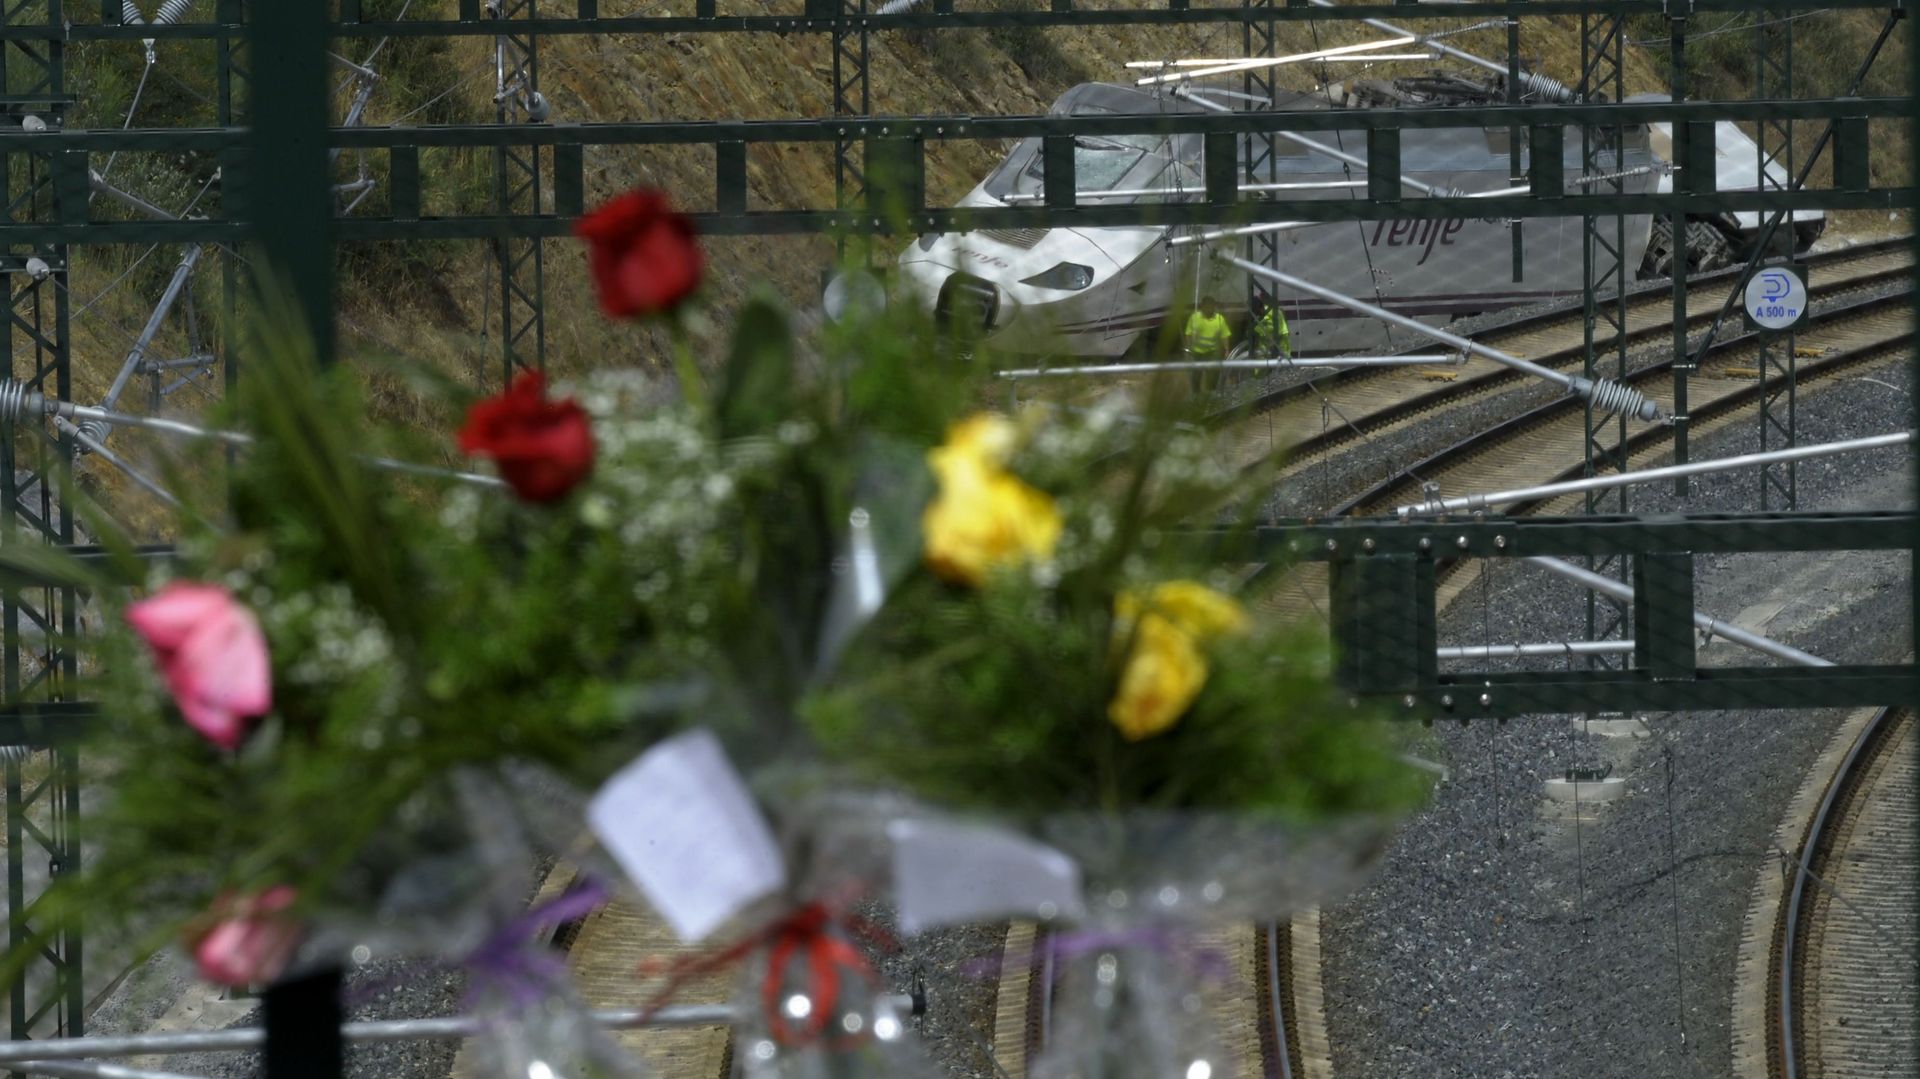 L'Espagne va examiner tout son réseau ferroviaire après l'accident de Saint-Jacques de Compostelle